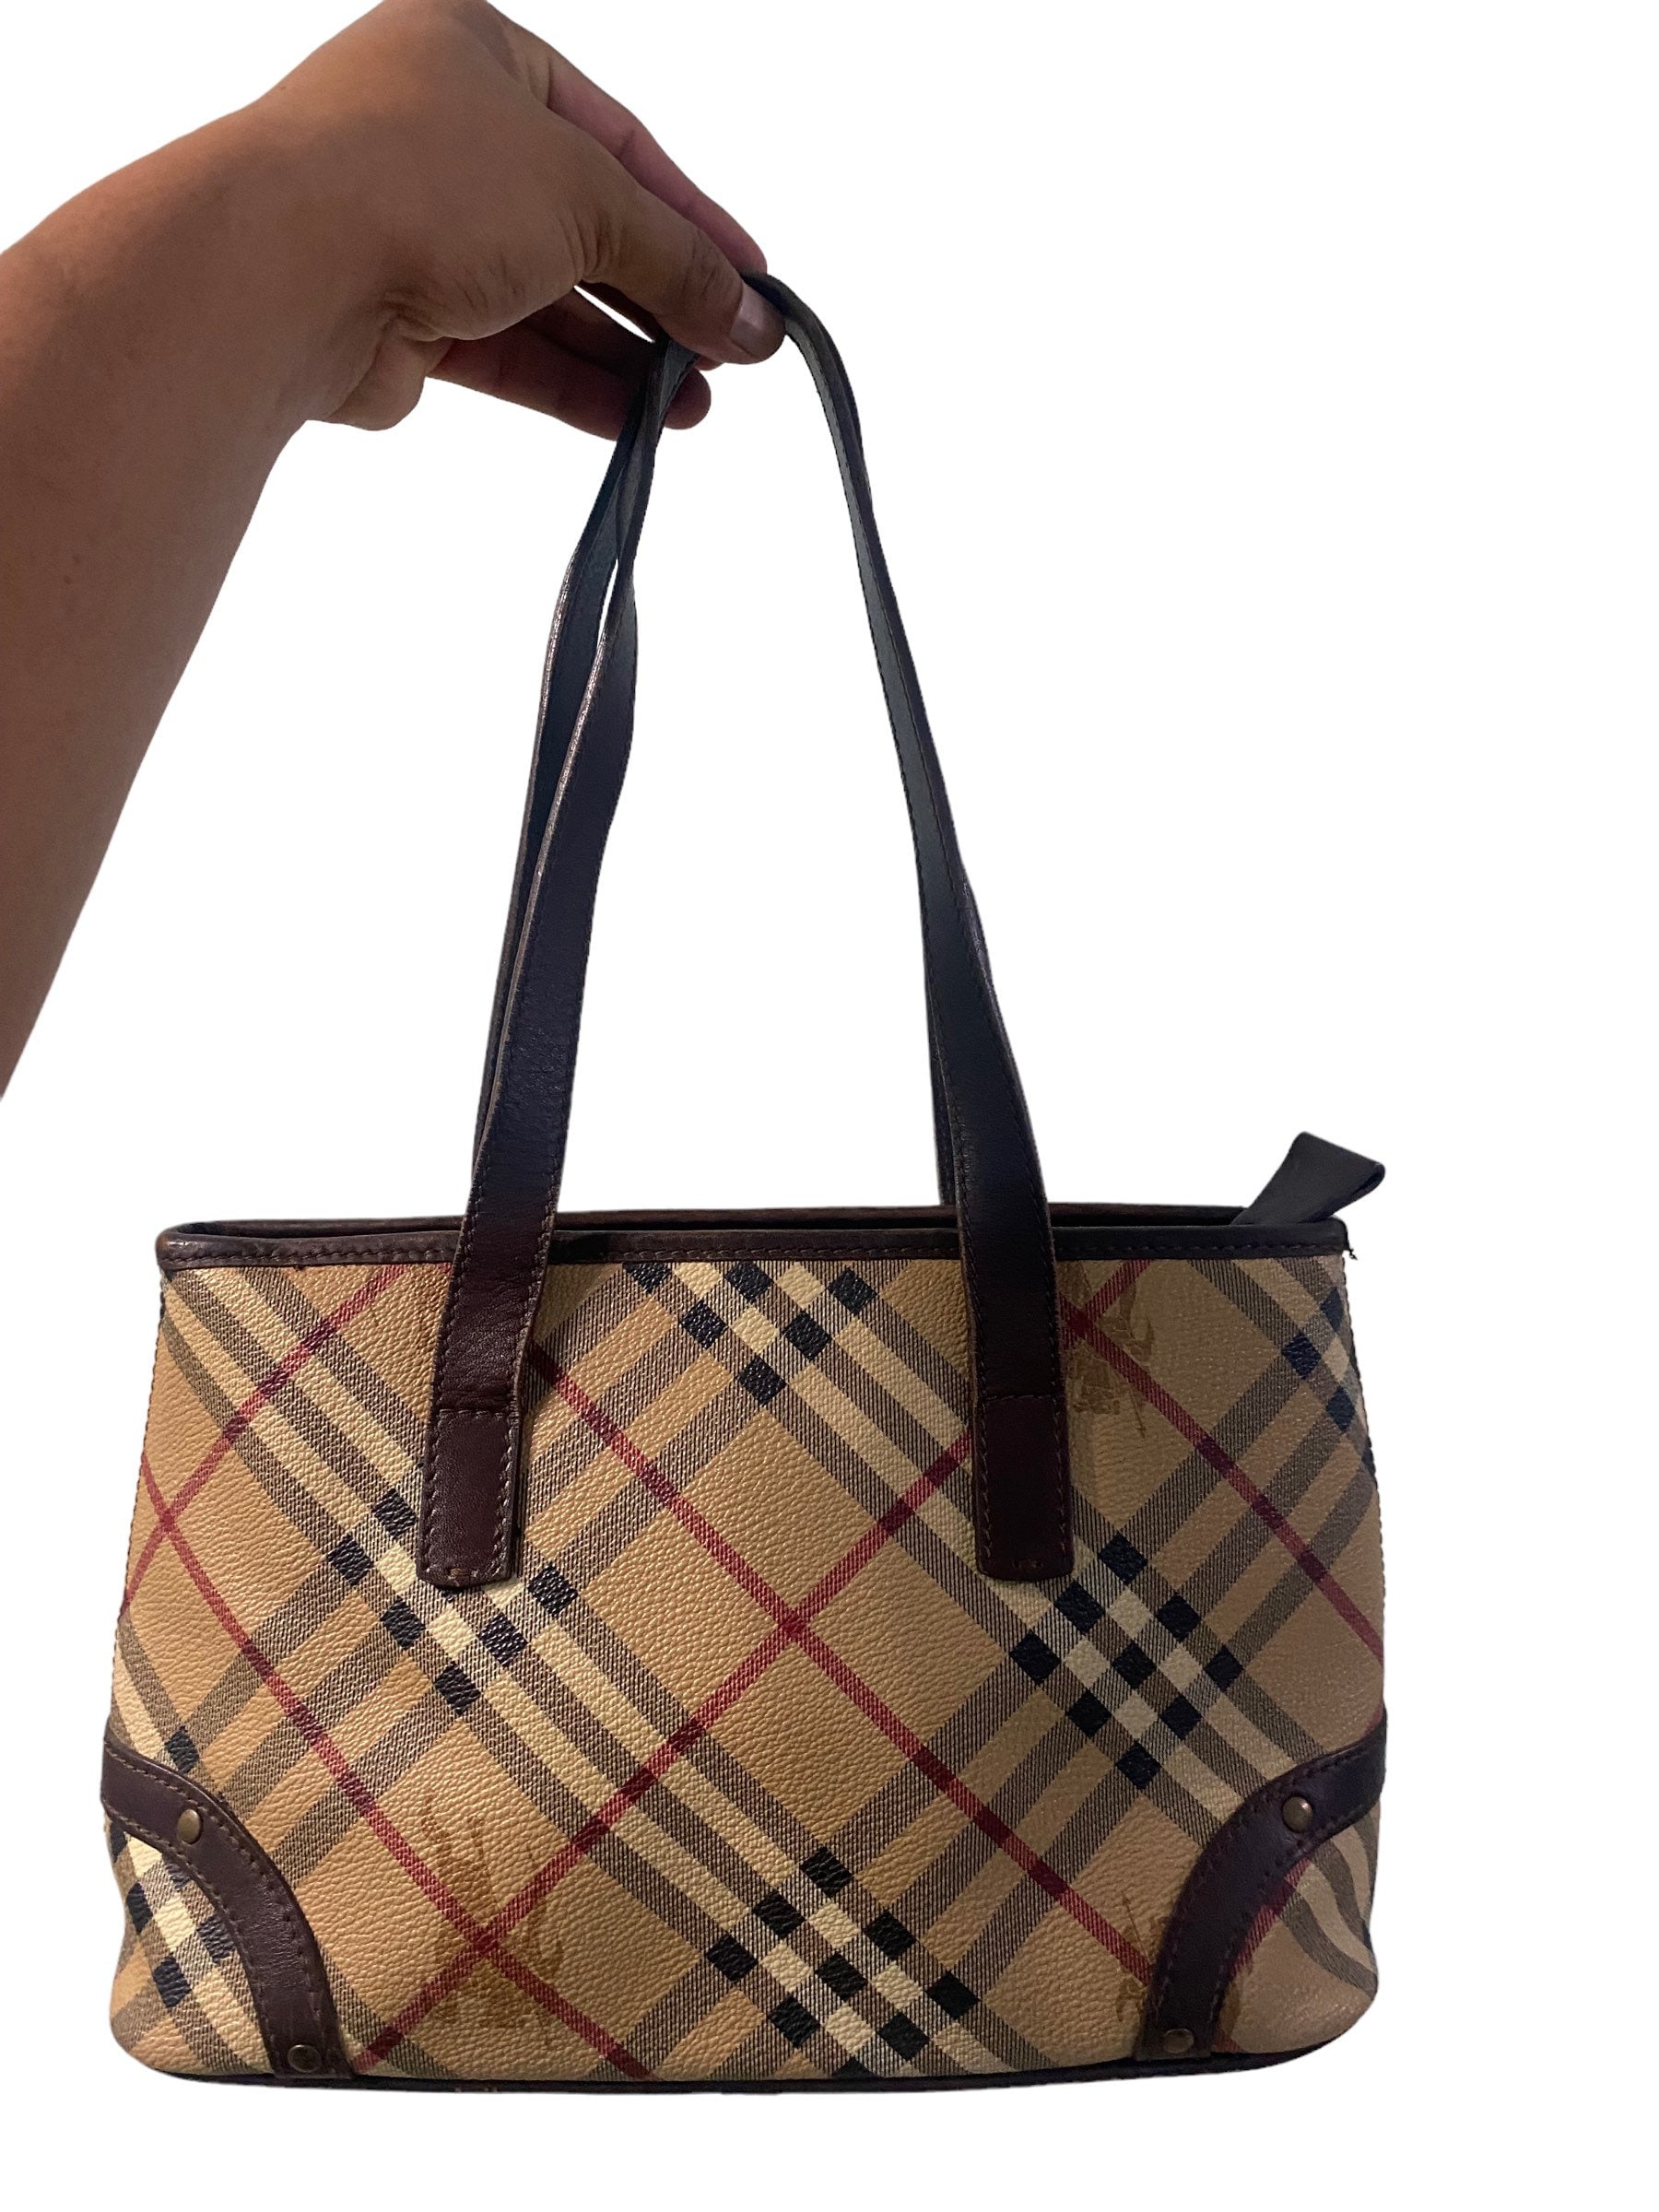 Authentic Burberry Bag (Genuine Original), Women's Fashion, Bags